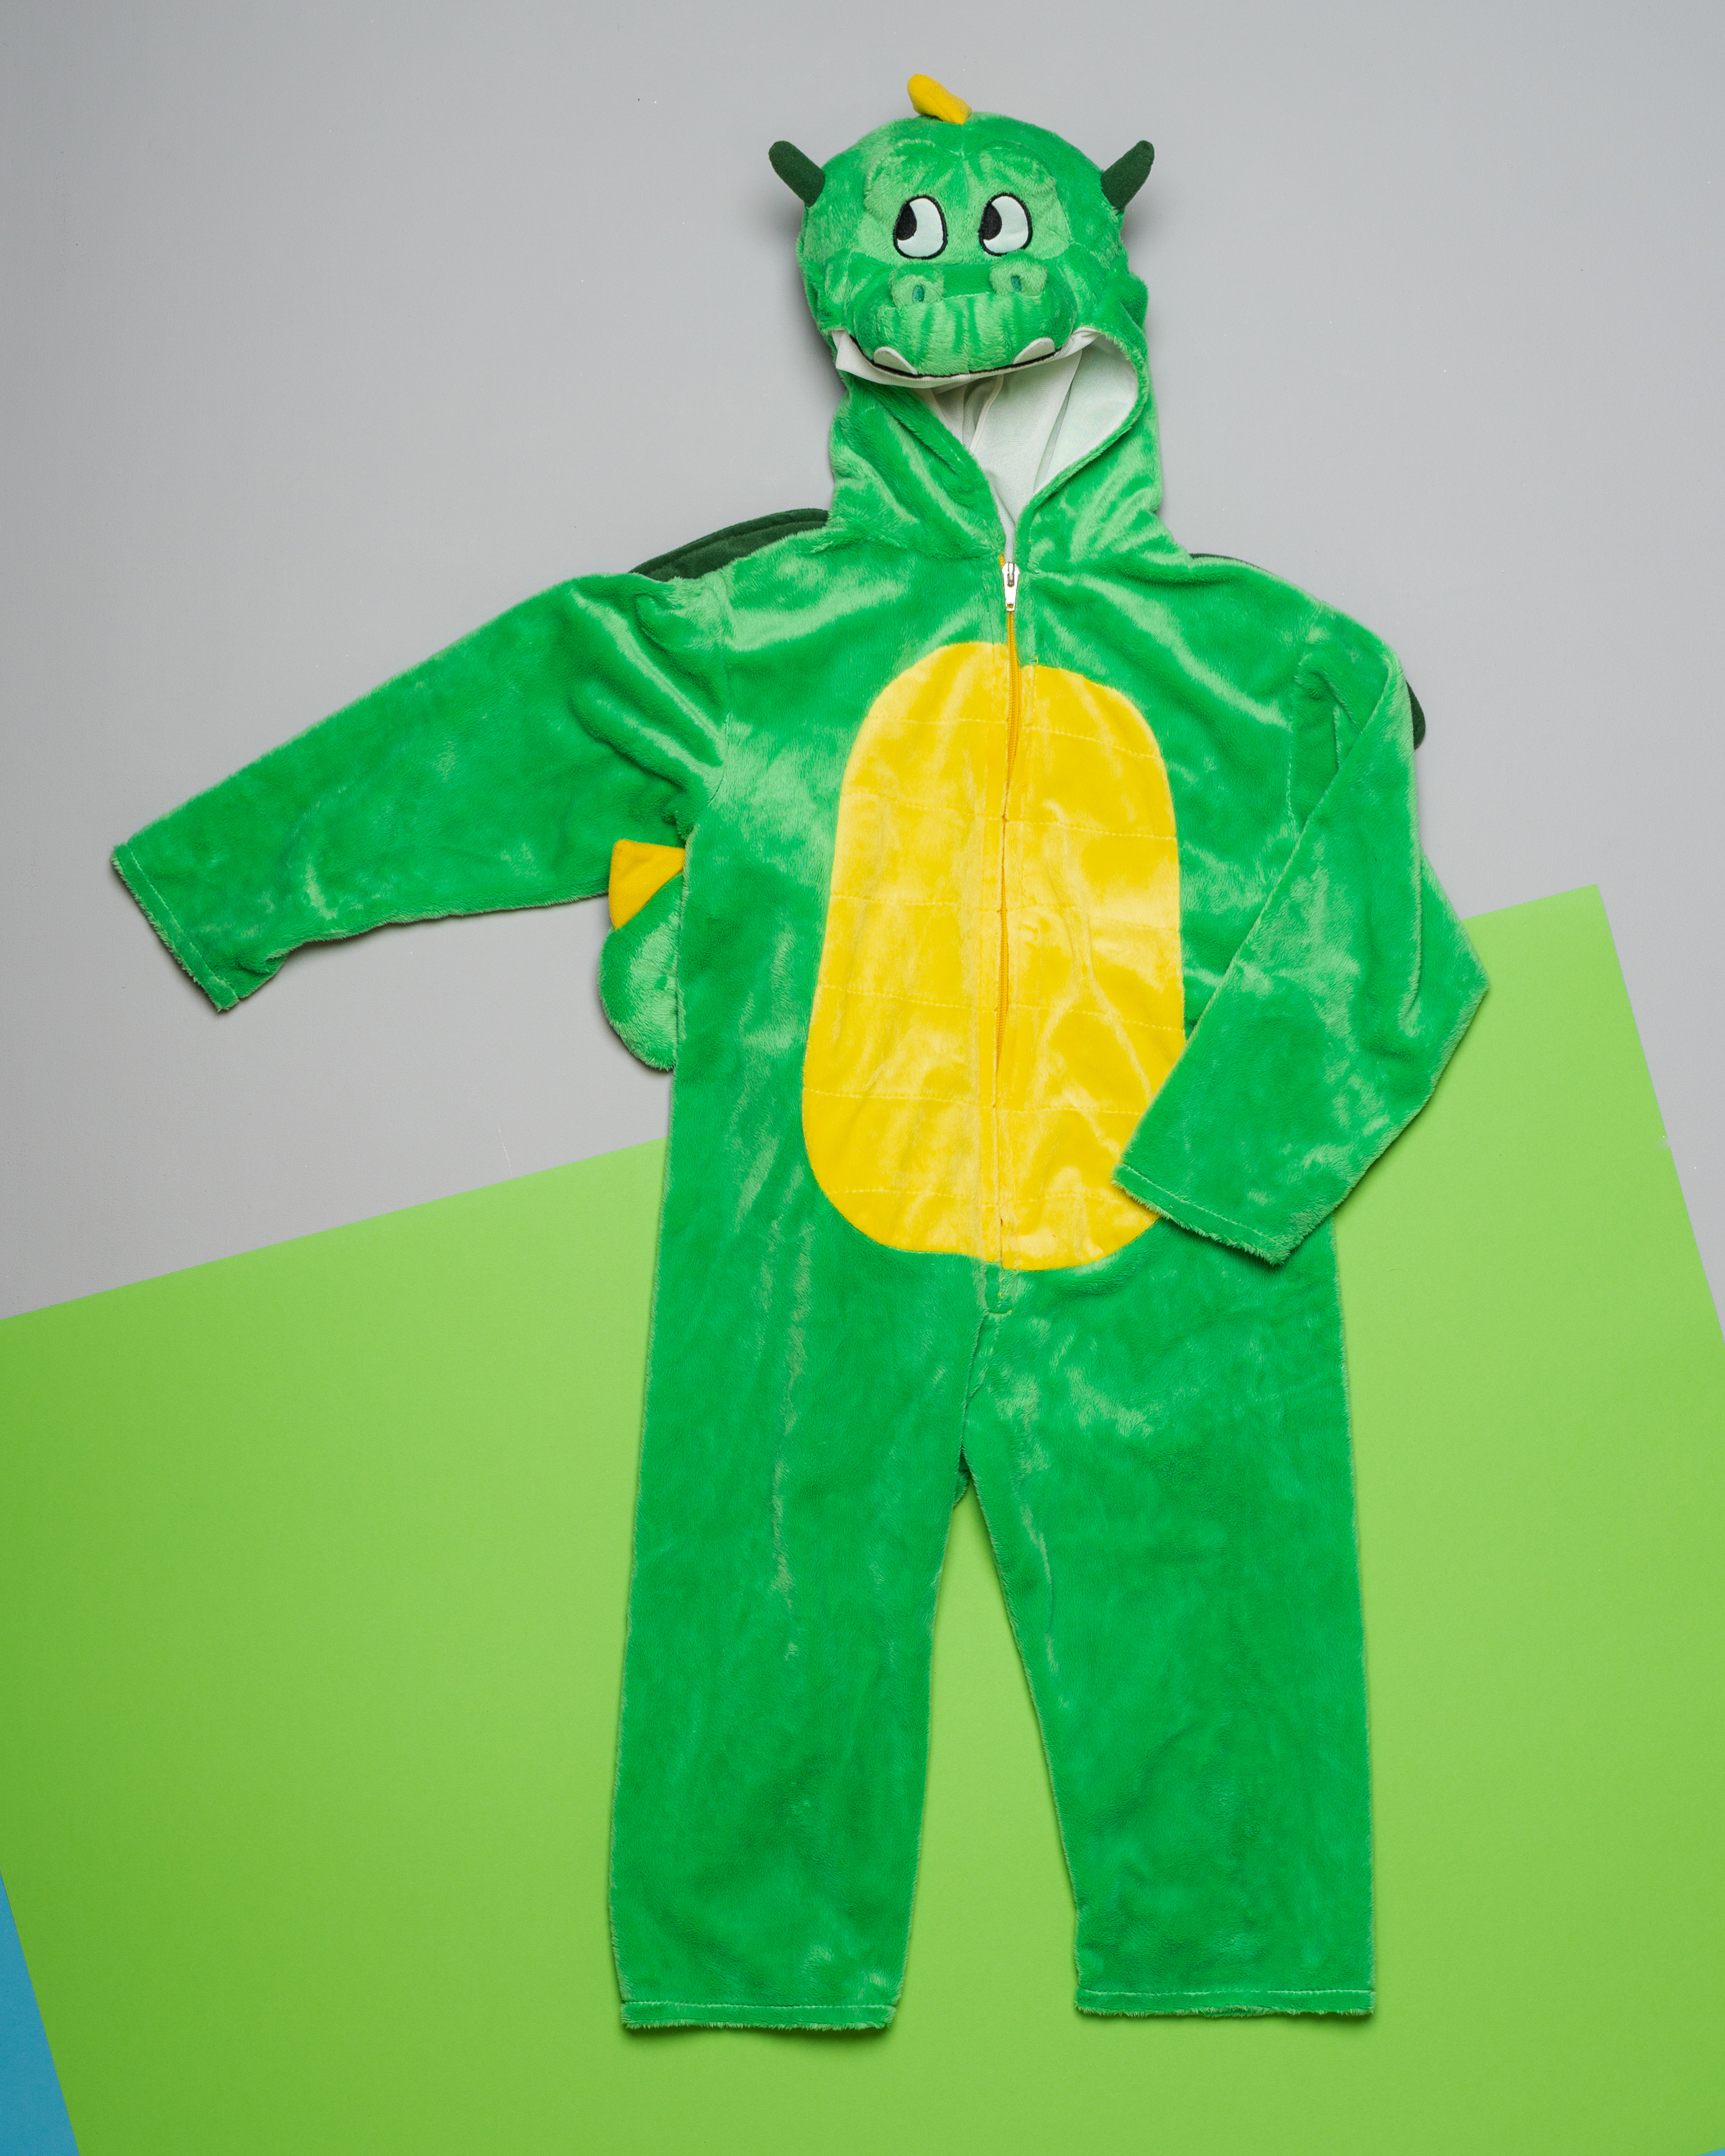 Dino Kostüm für unisex Gr. 104/110 – Verkleidung Karneval Fasching Drache Dinosaurier grün gelb flauschig